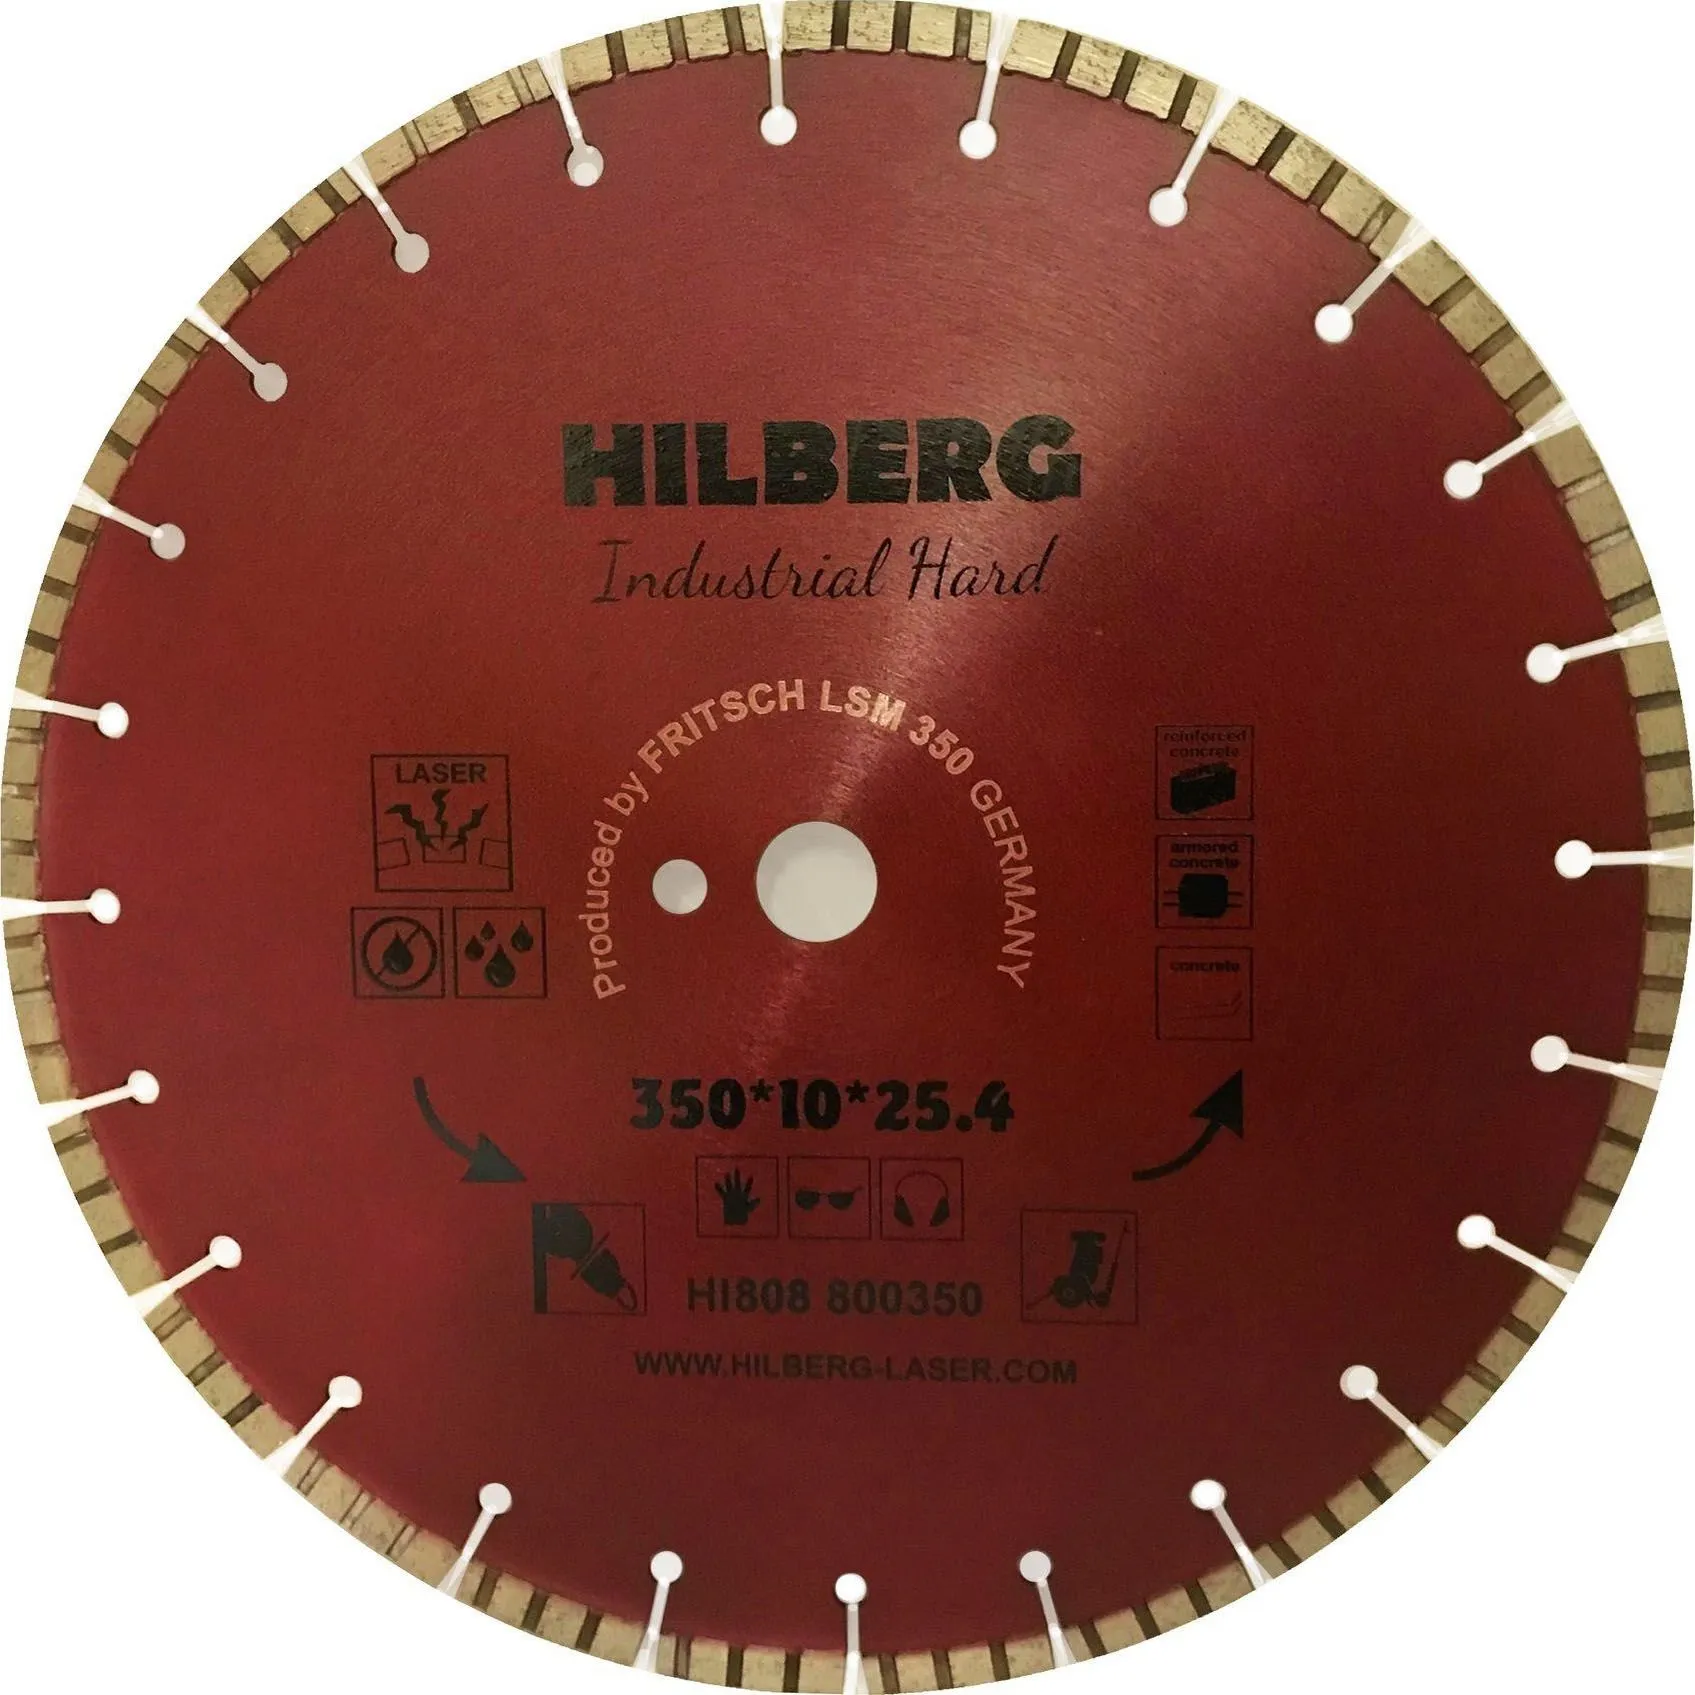 Диск алмазный 350 Hilberg Industrial Hard HI808